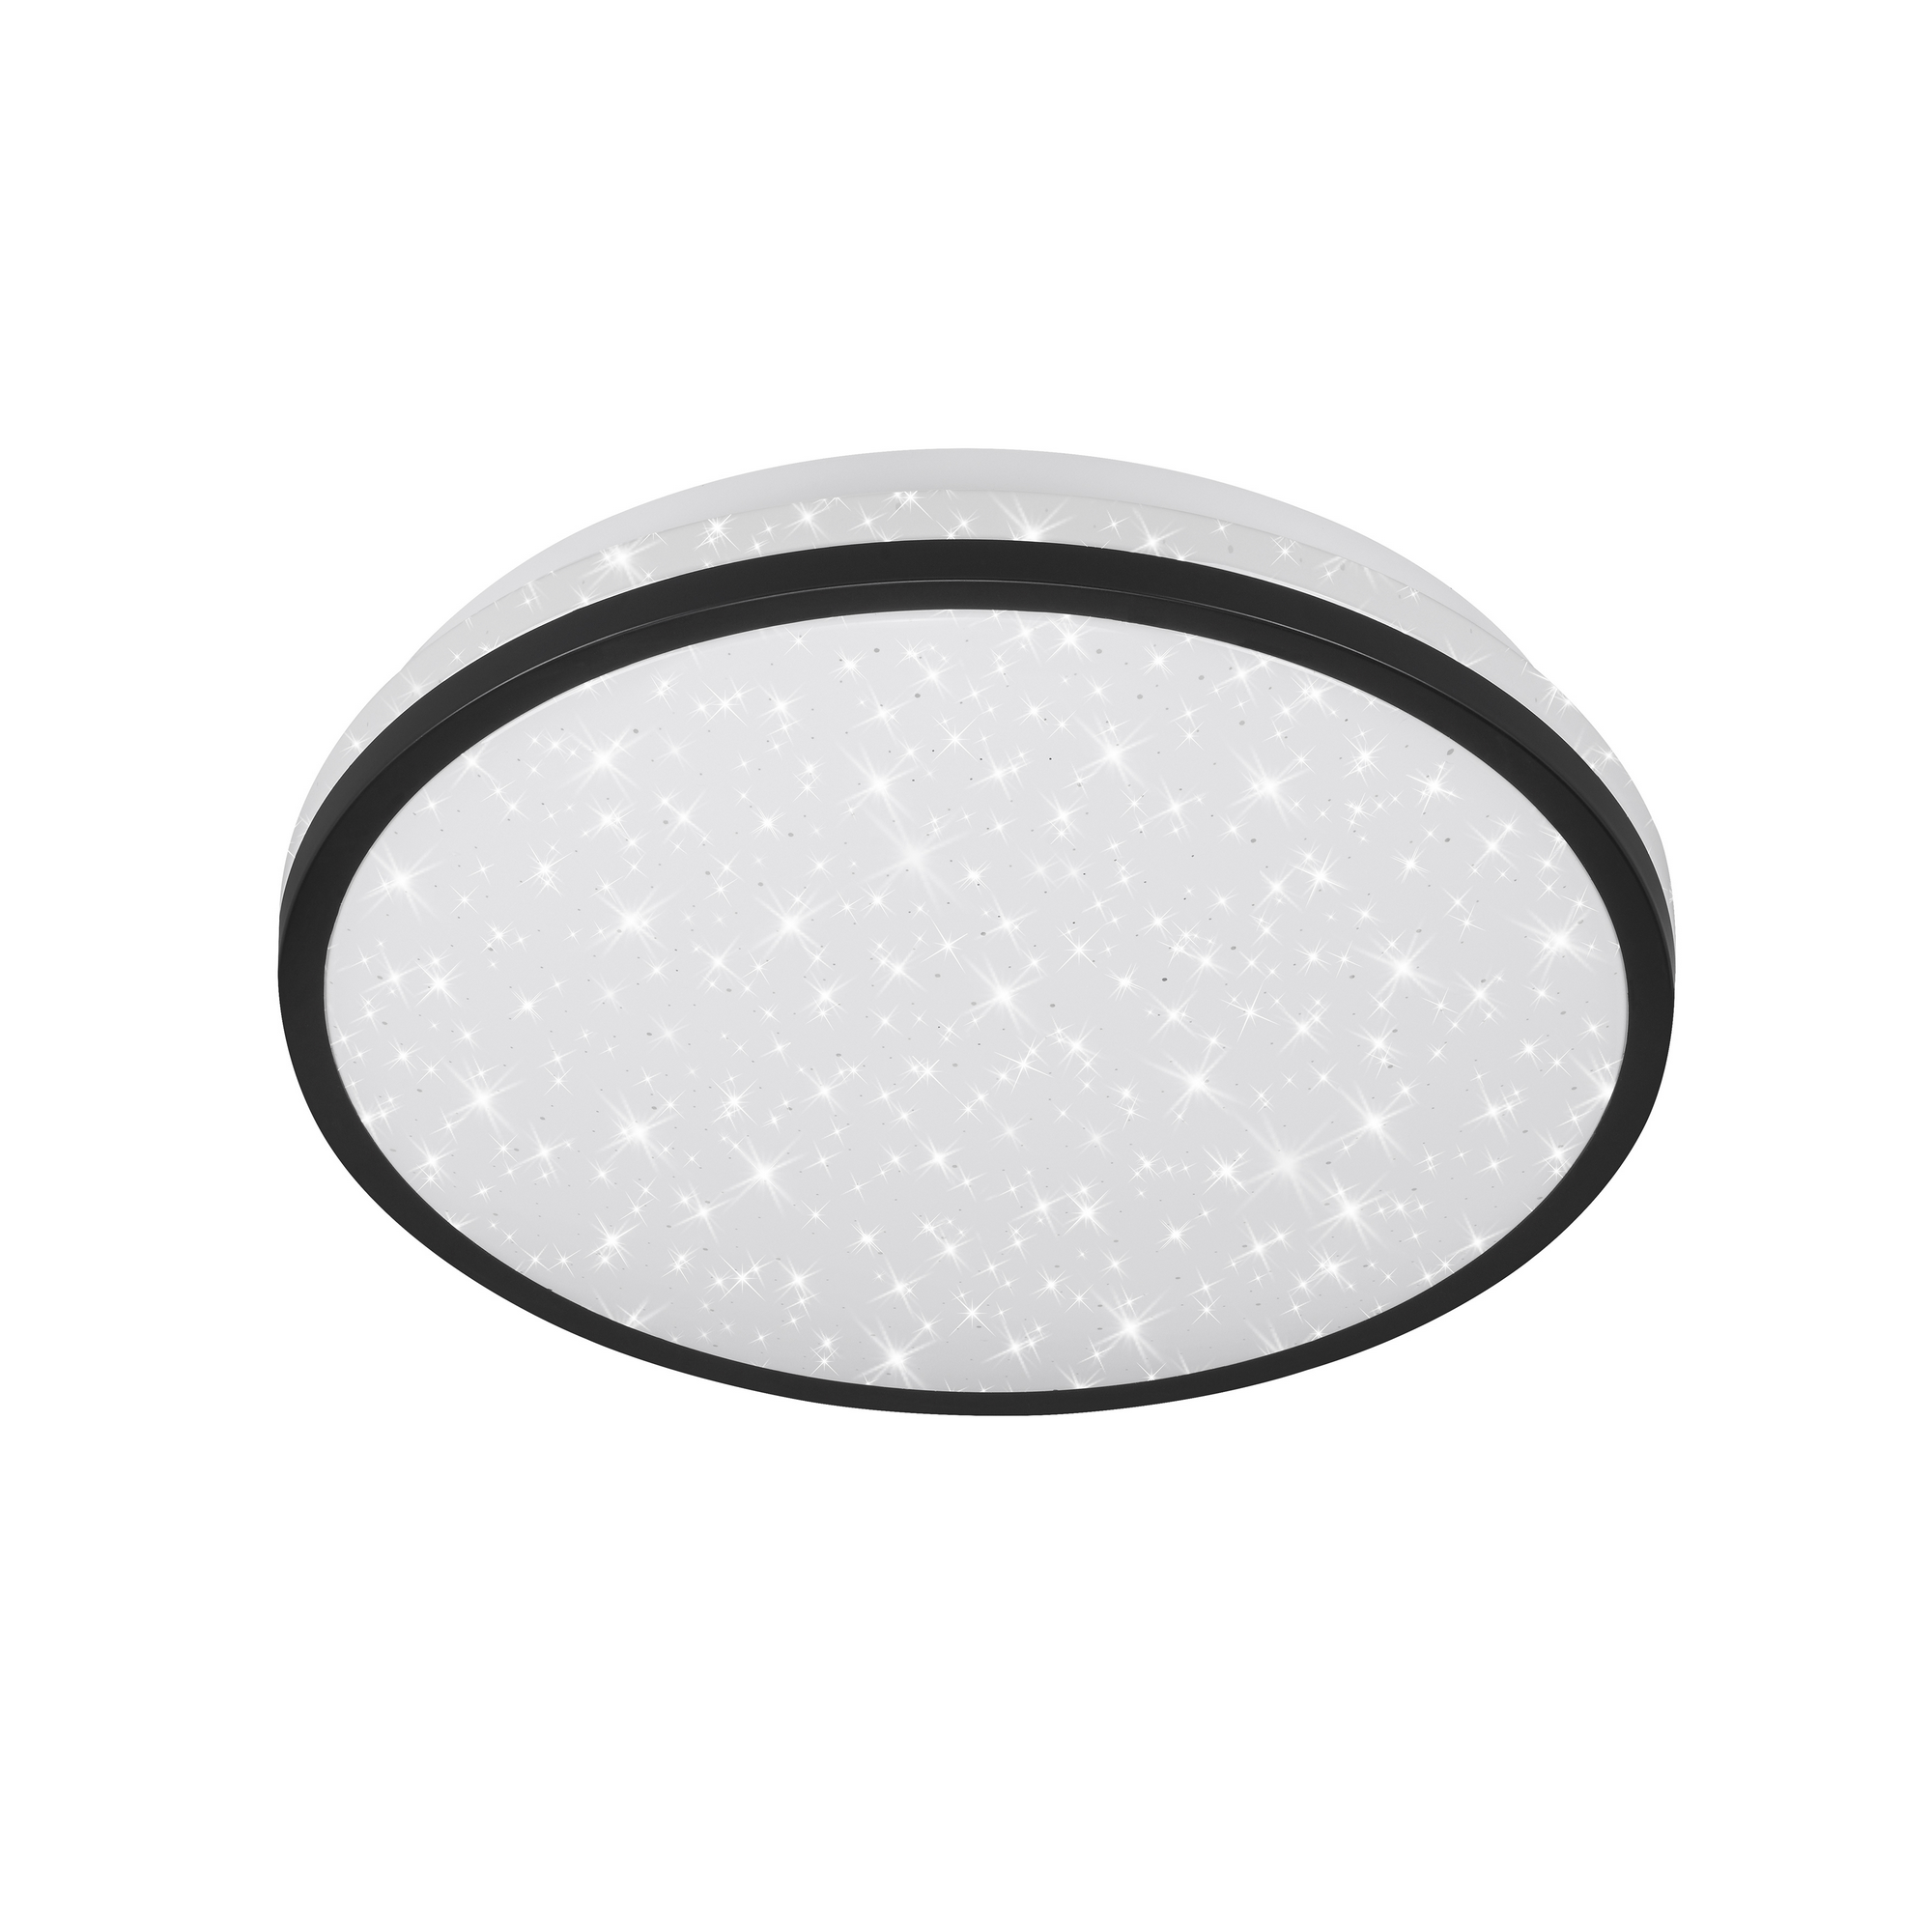 LED-Deckenleuchte 'Tepi' weiß/schwarz Ø 28 x 7 cm, mit Bewegungsmelder und Sterneneffekt + product picture